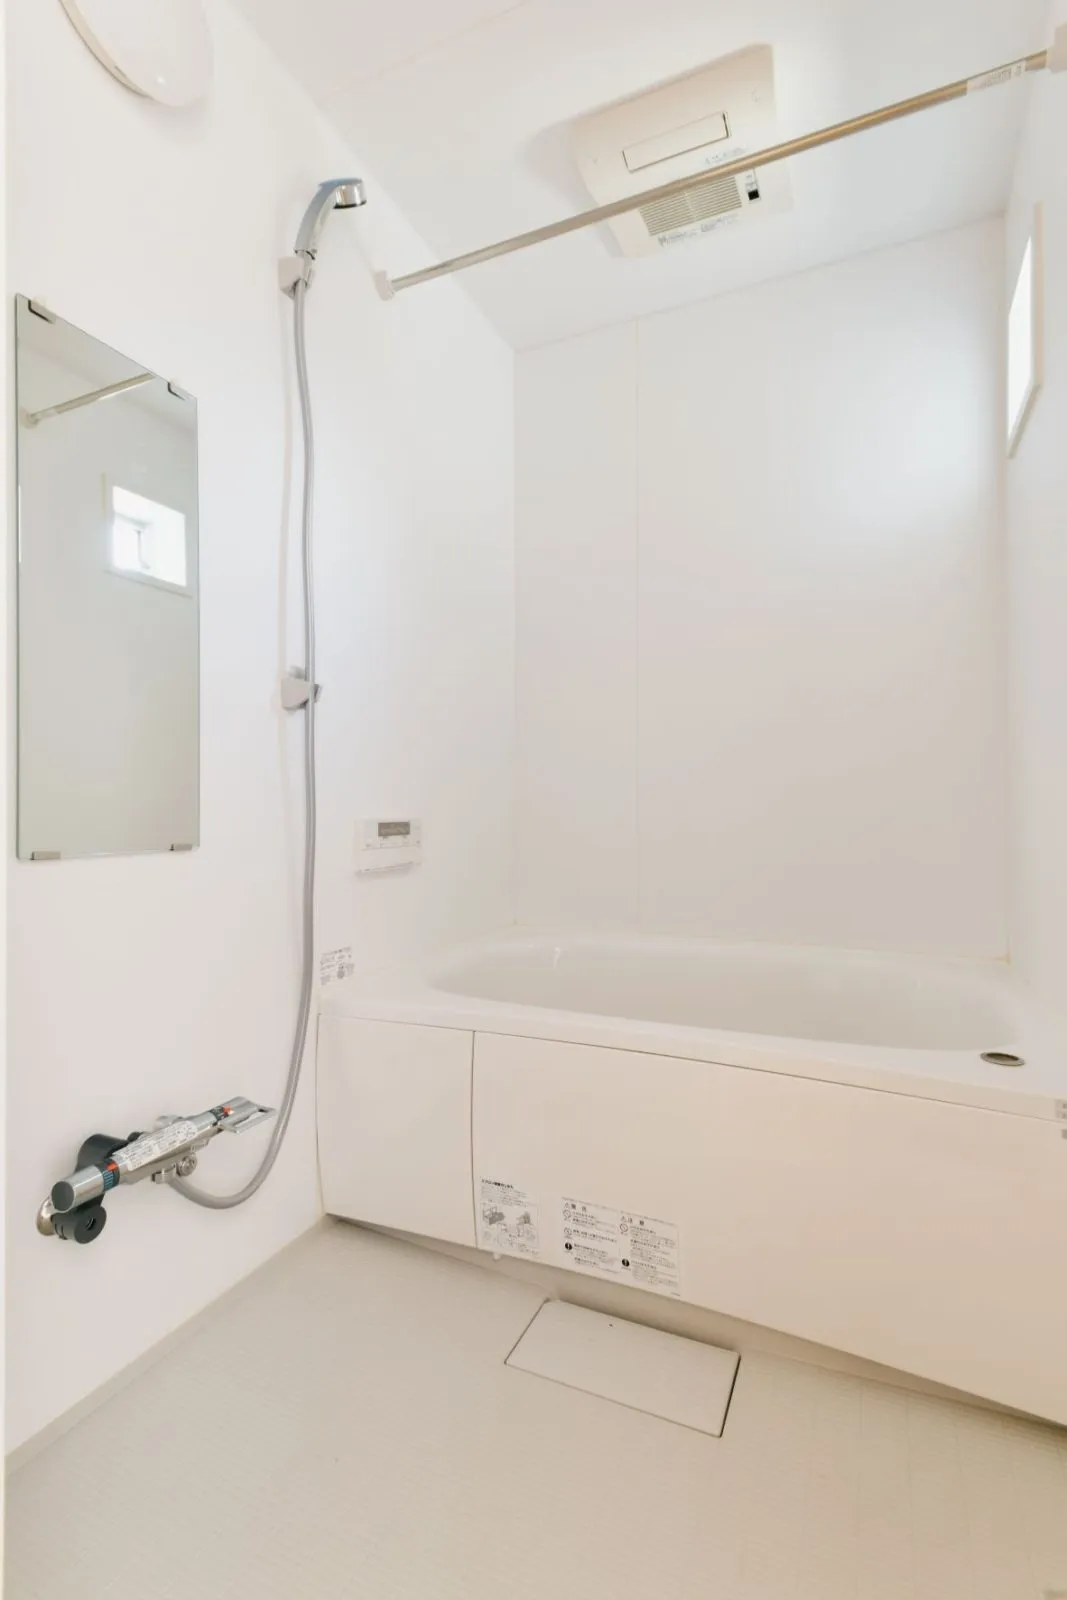 【バスルーム】<br>白を基調とした清潔感のあるバスルーム。<br>追い炊き機能付き。<br>部屋干し用の暖房乾燥機付きです。